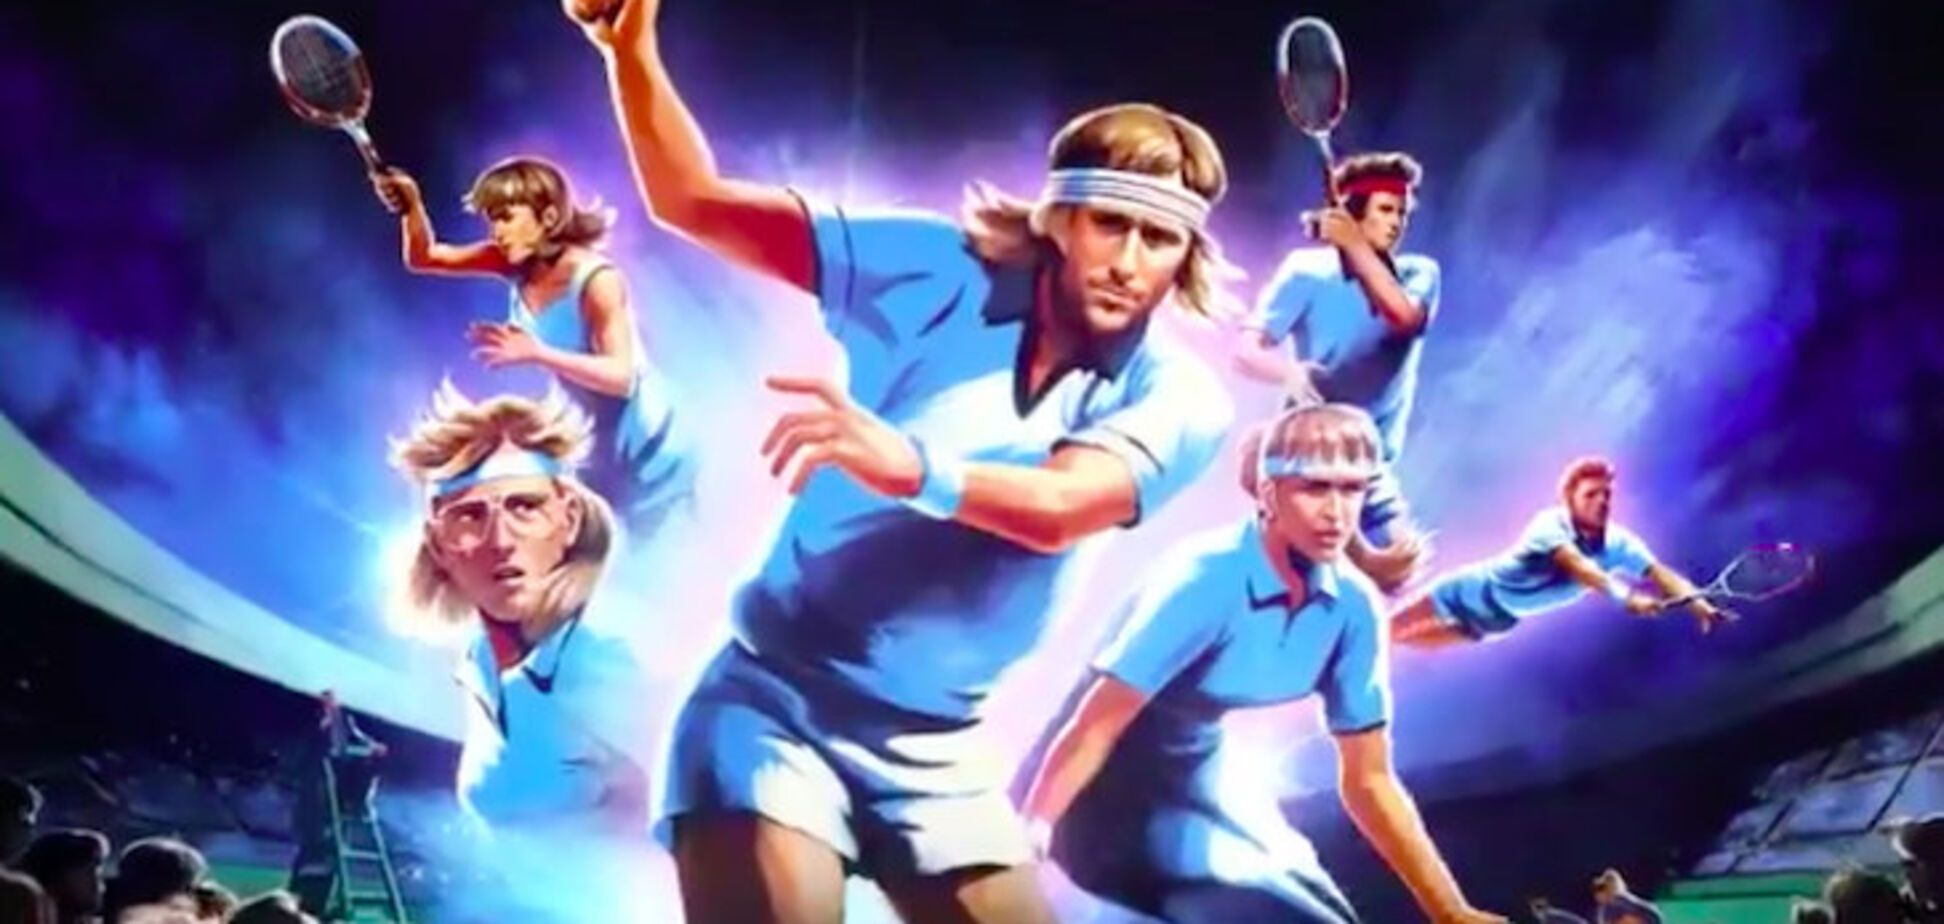 Організатори Wimbledon випустили краще промо в історії тенісу